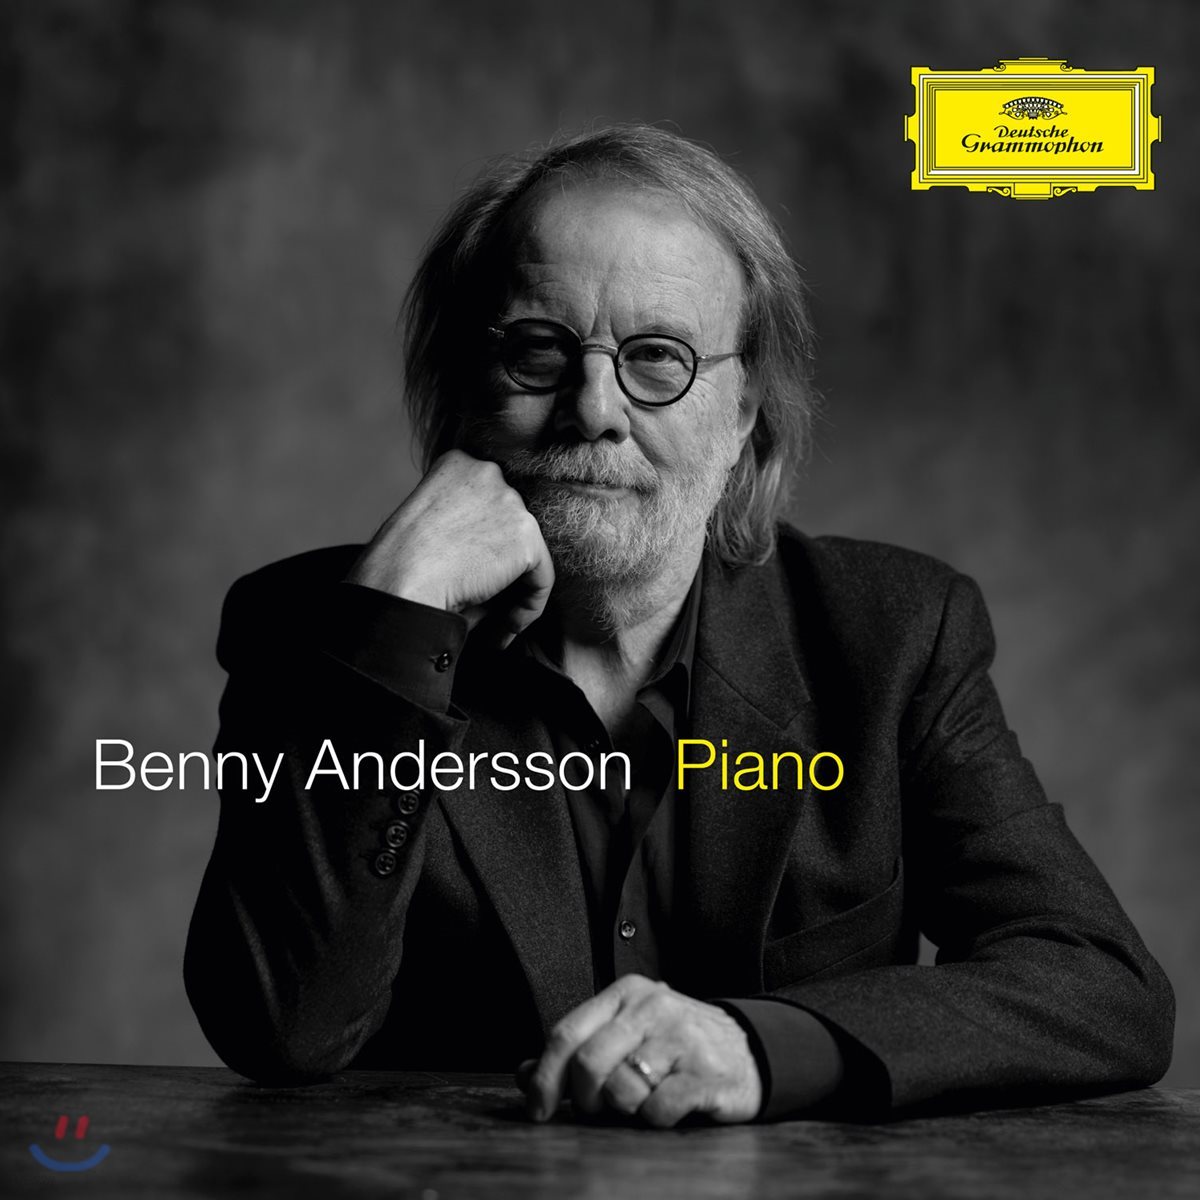 아바의 `베니 앤더슨`이 피아노로 연주한 아바의 명곡 보너스 버전 (Benny Andersson - Piano Bonus Version)